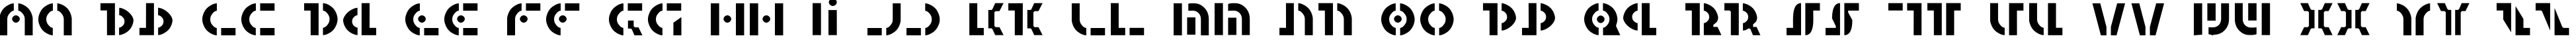 Пример написания английского алфавита шрифтом Questlok Light